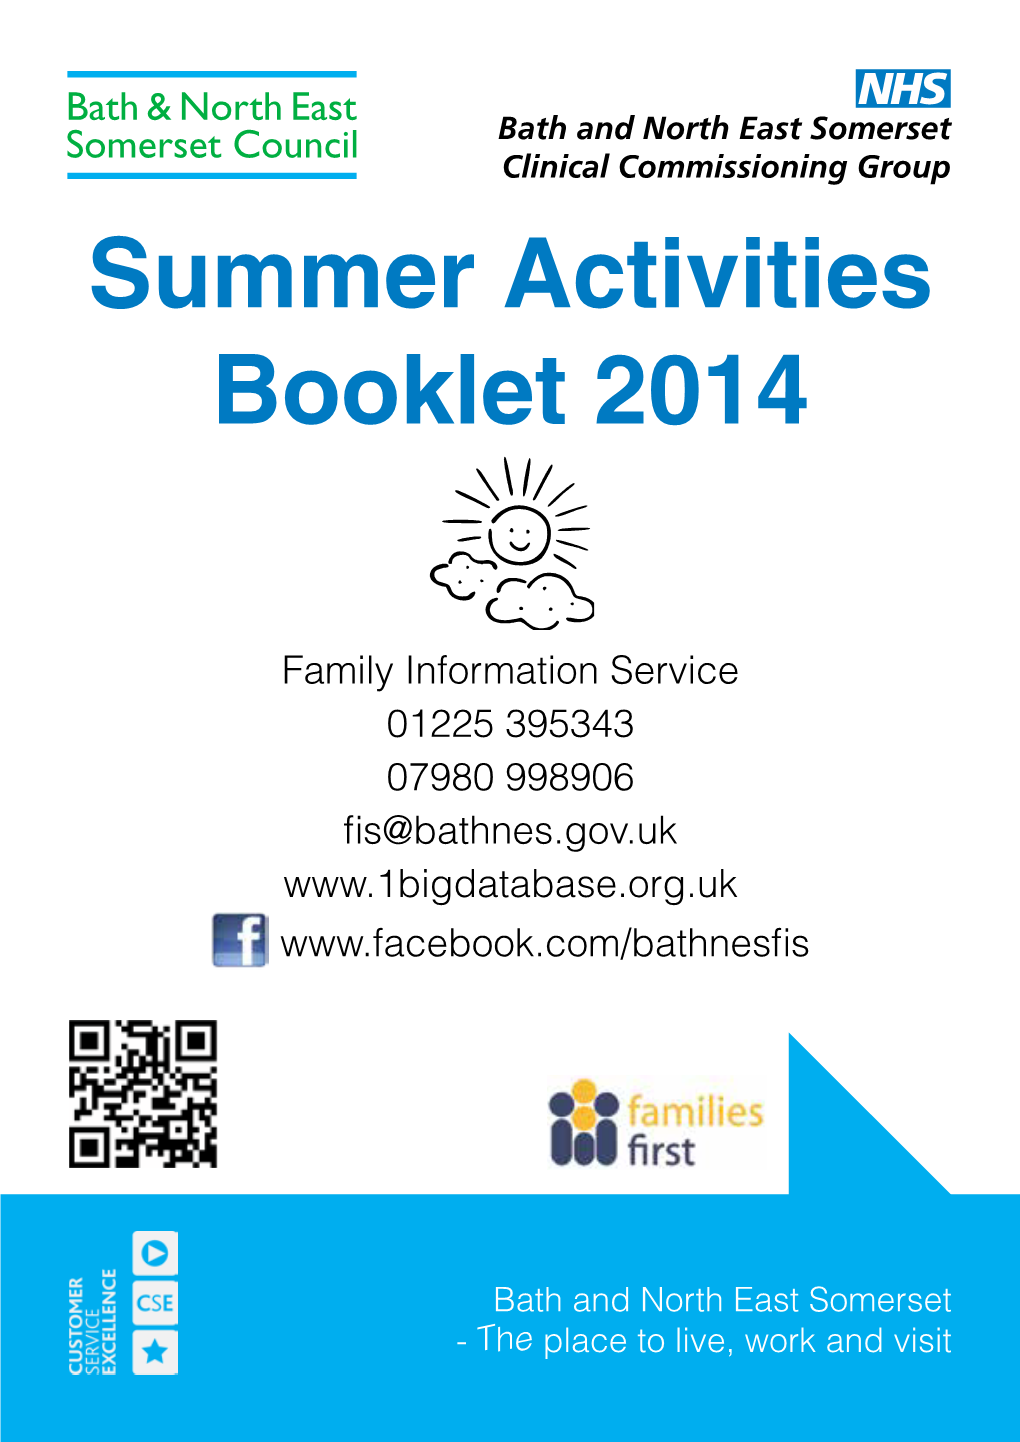 Summer Activities Booklet 2014